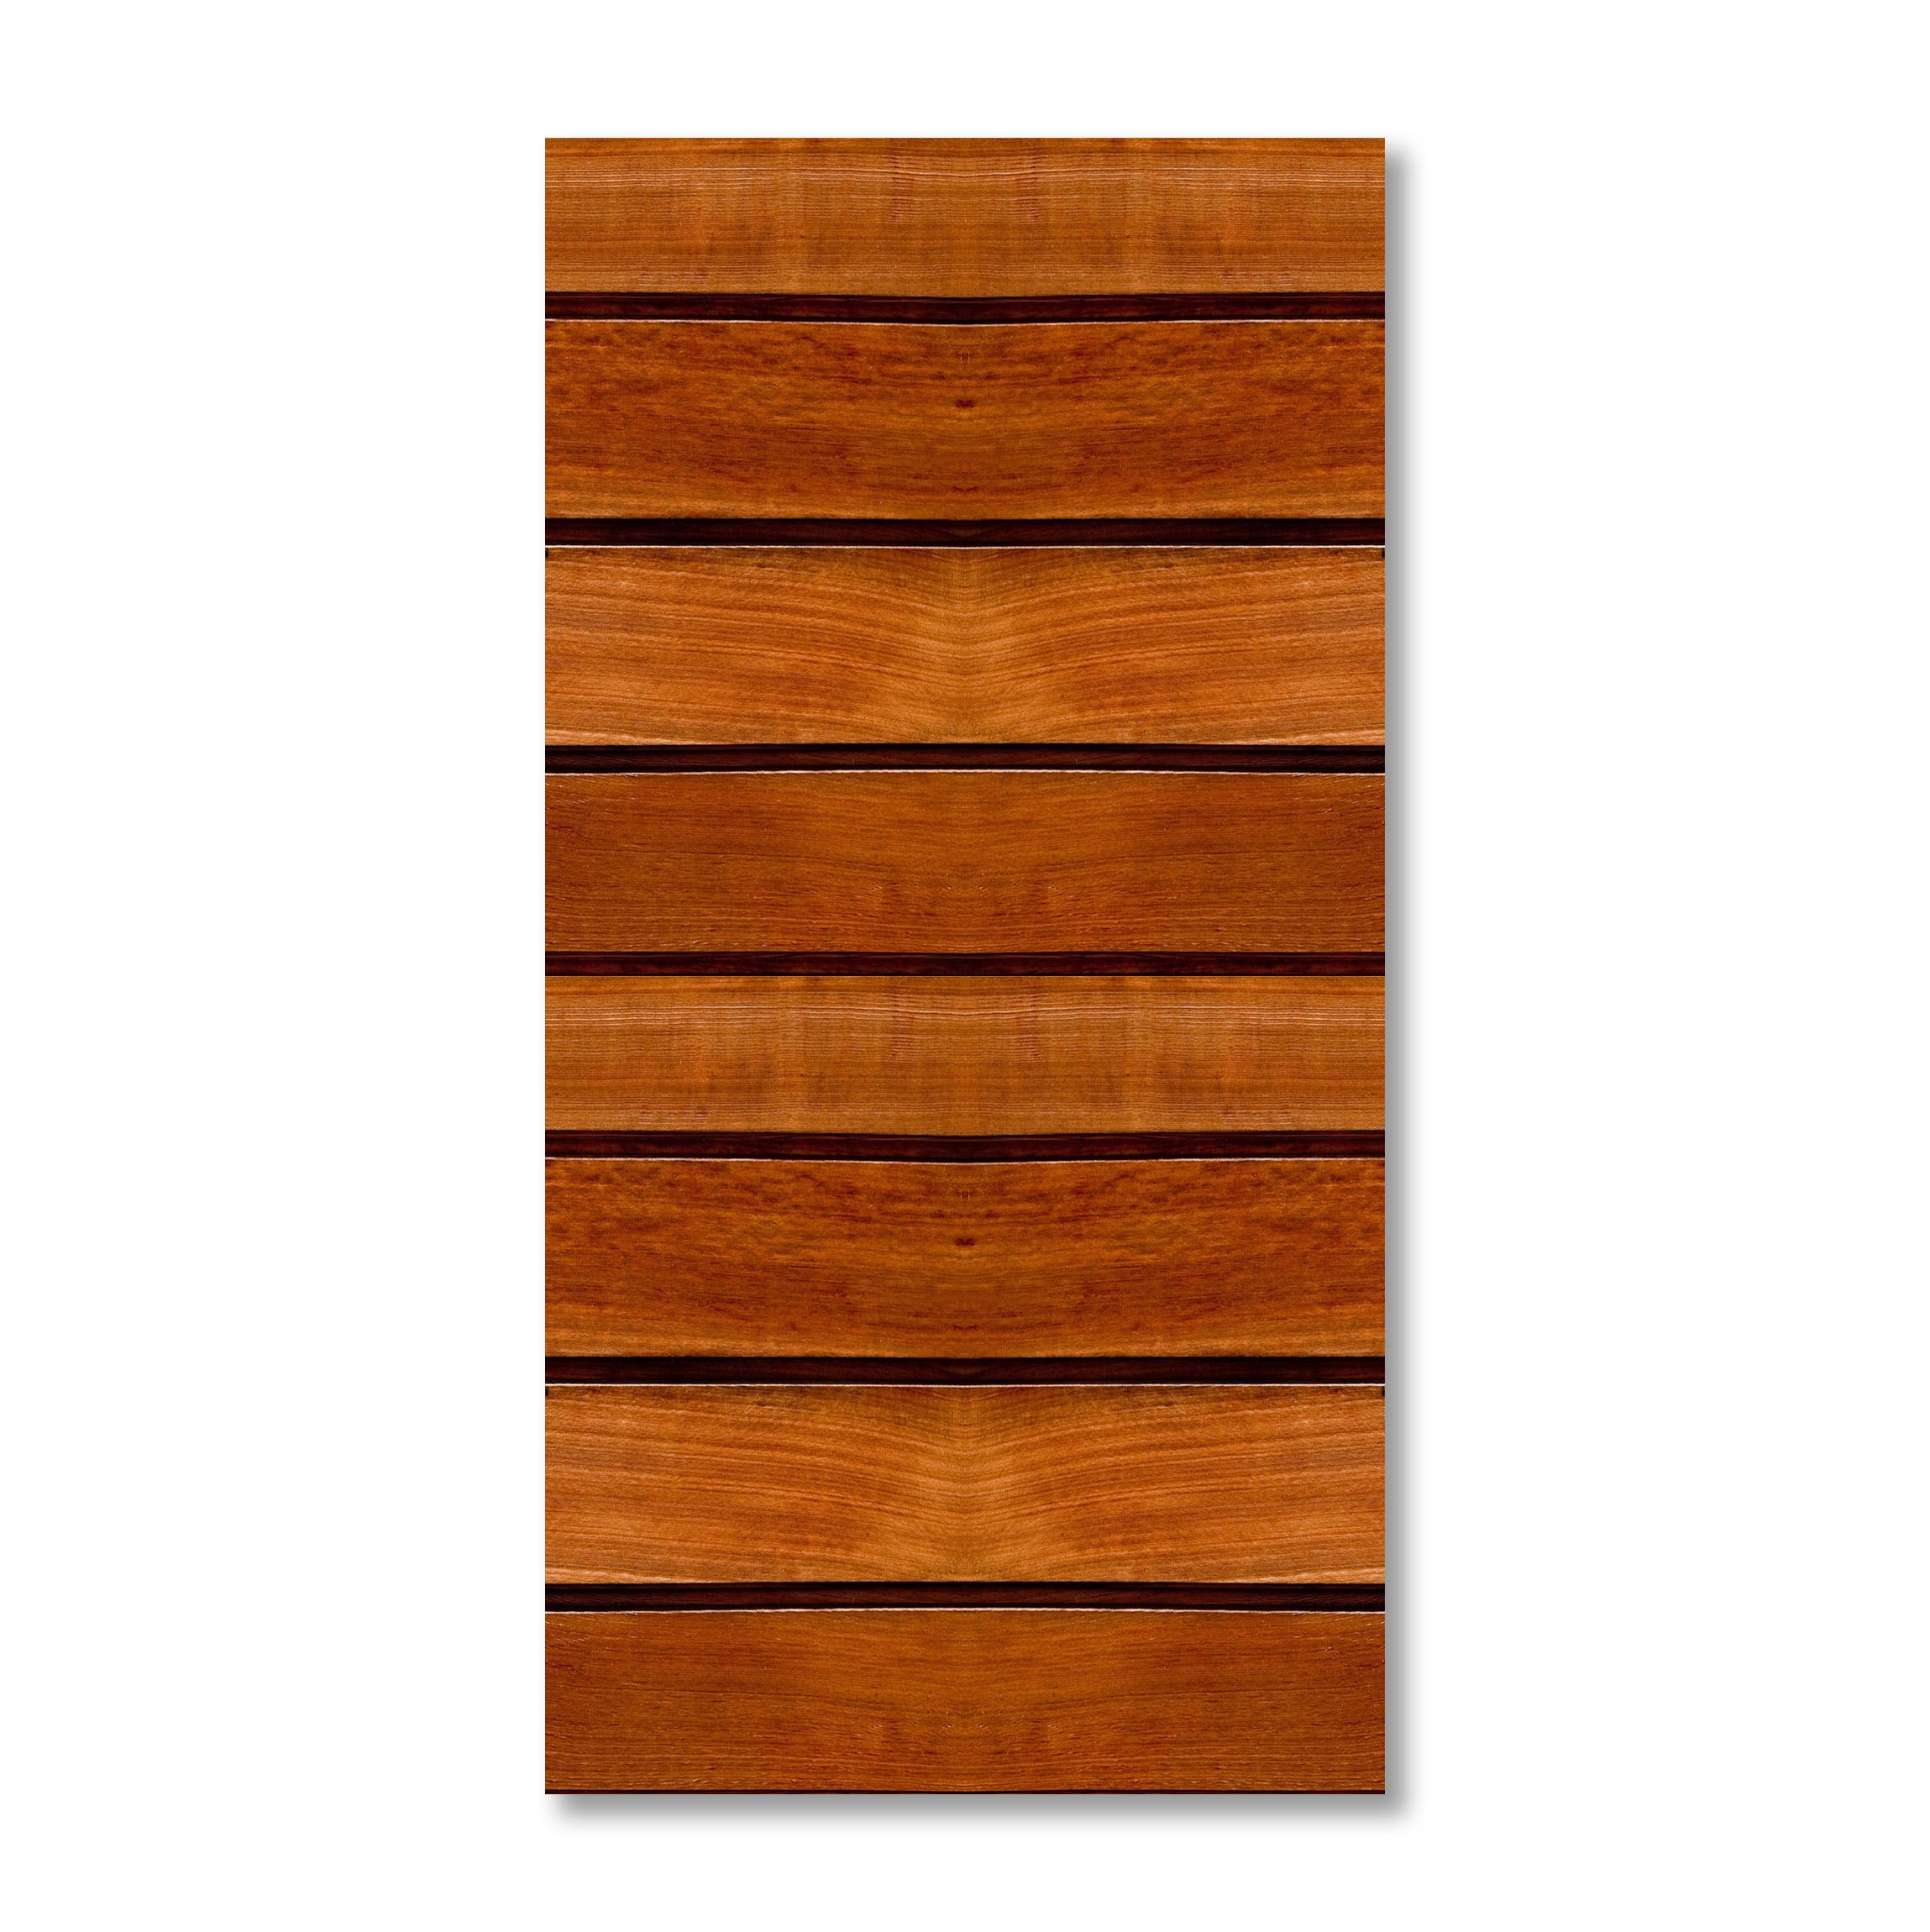 Wooden Texture